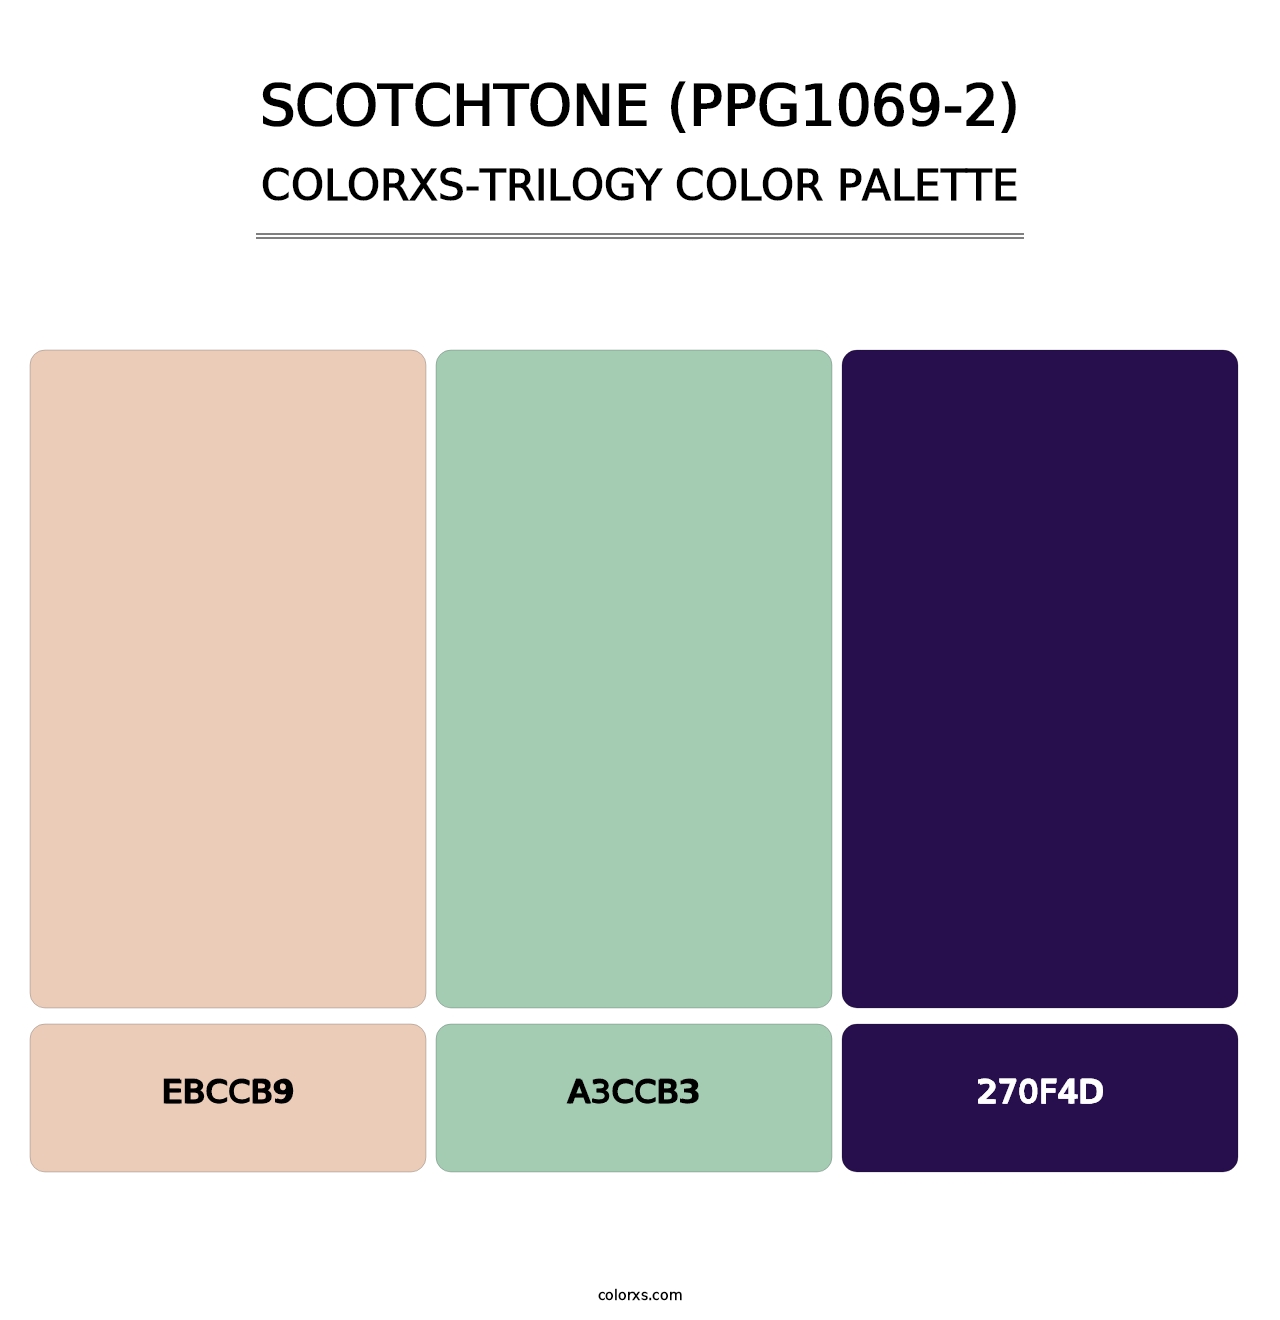 Scotchtone (PPG1069-2) - Colorxs Trilogy Palette